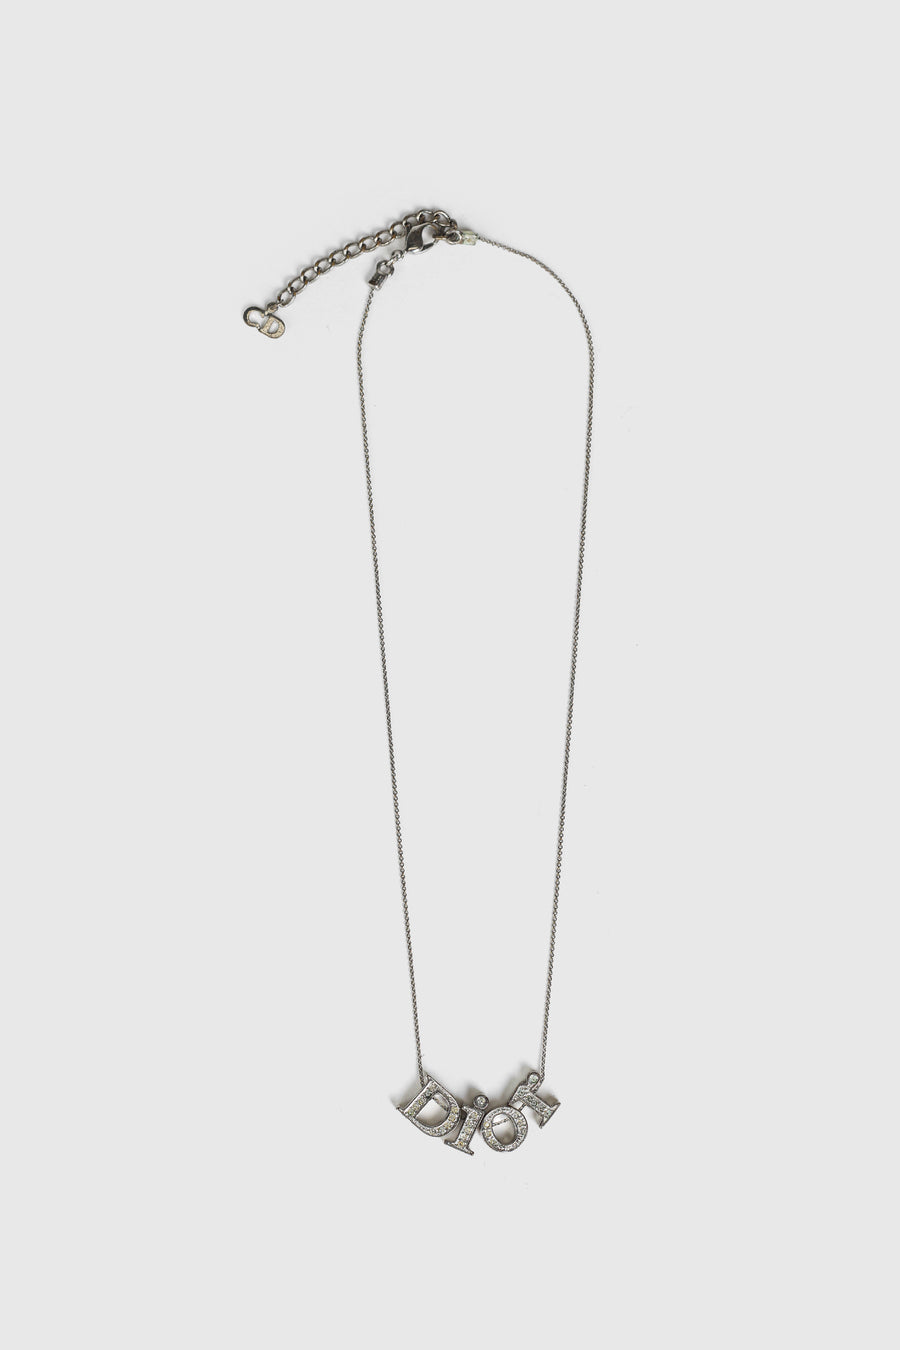 Vintage Dior Necklace